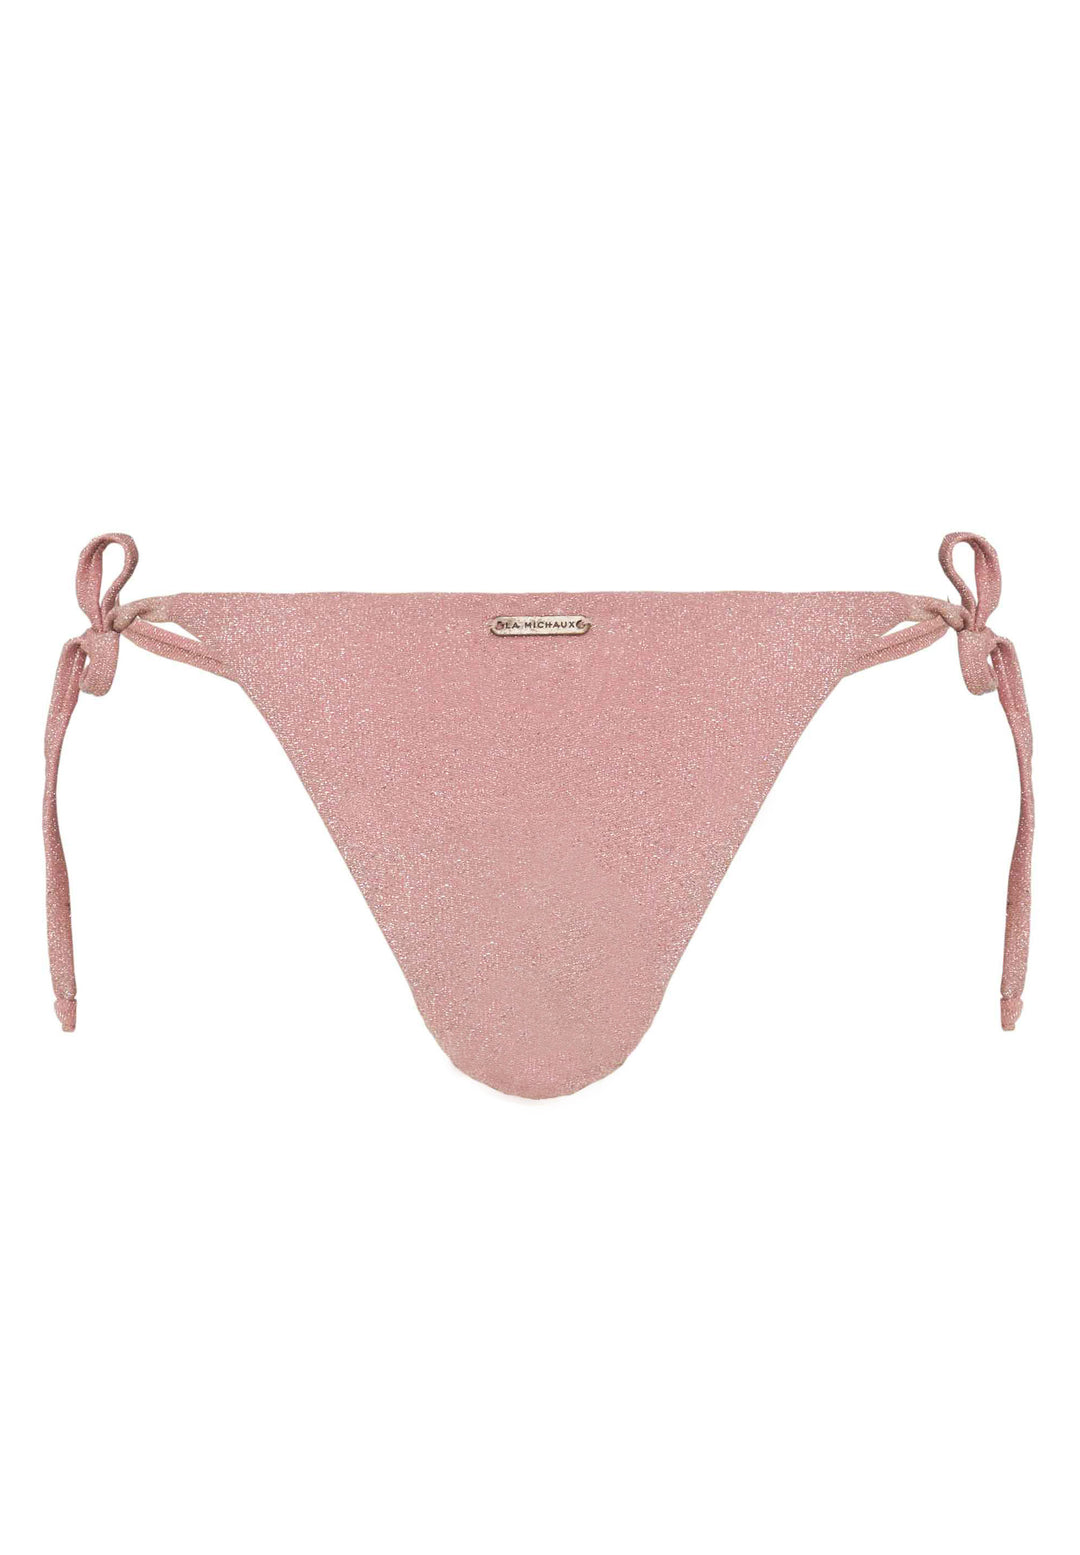 OLIVIA pink glitter bottom - La Michaux